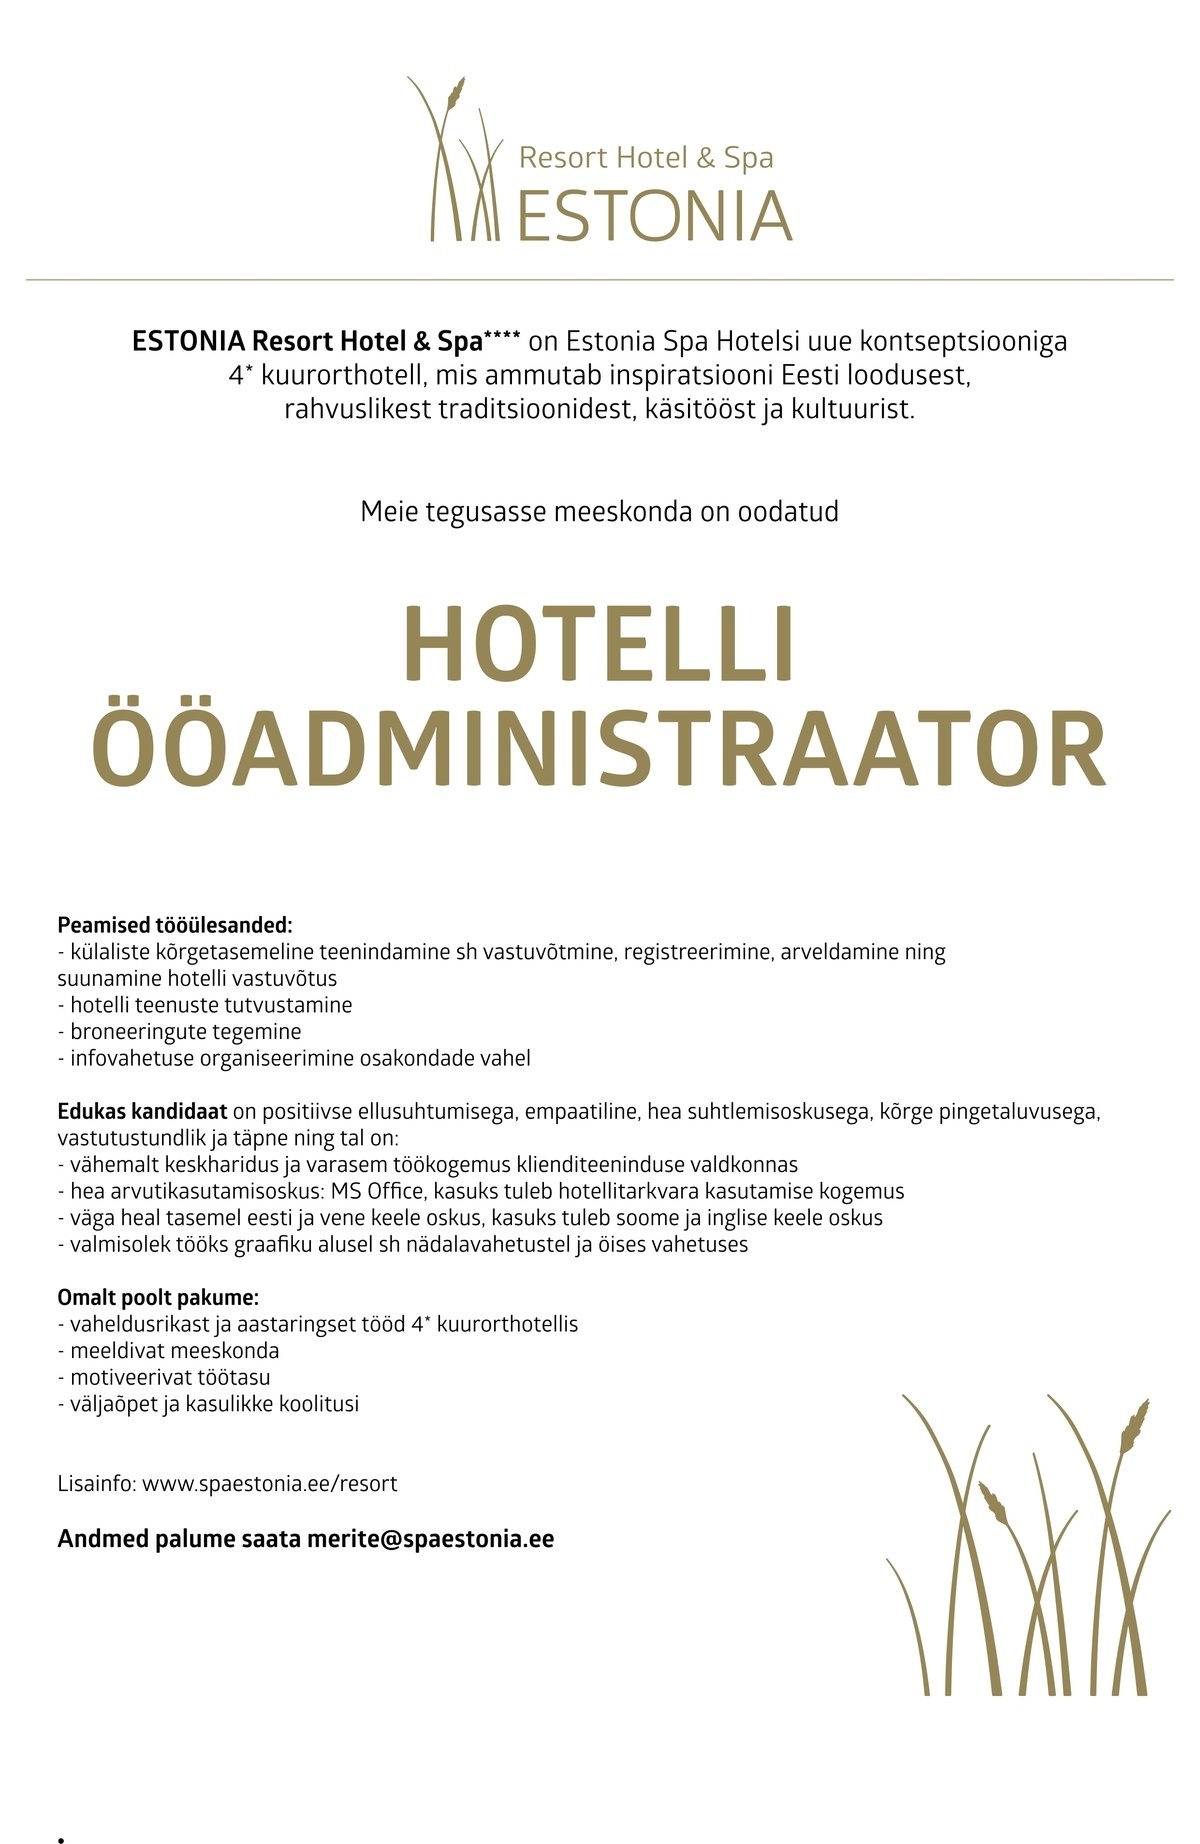 Estonia Spa Hotels AS Ööadministraator